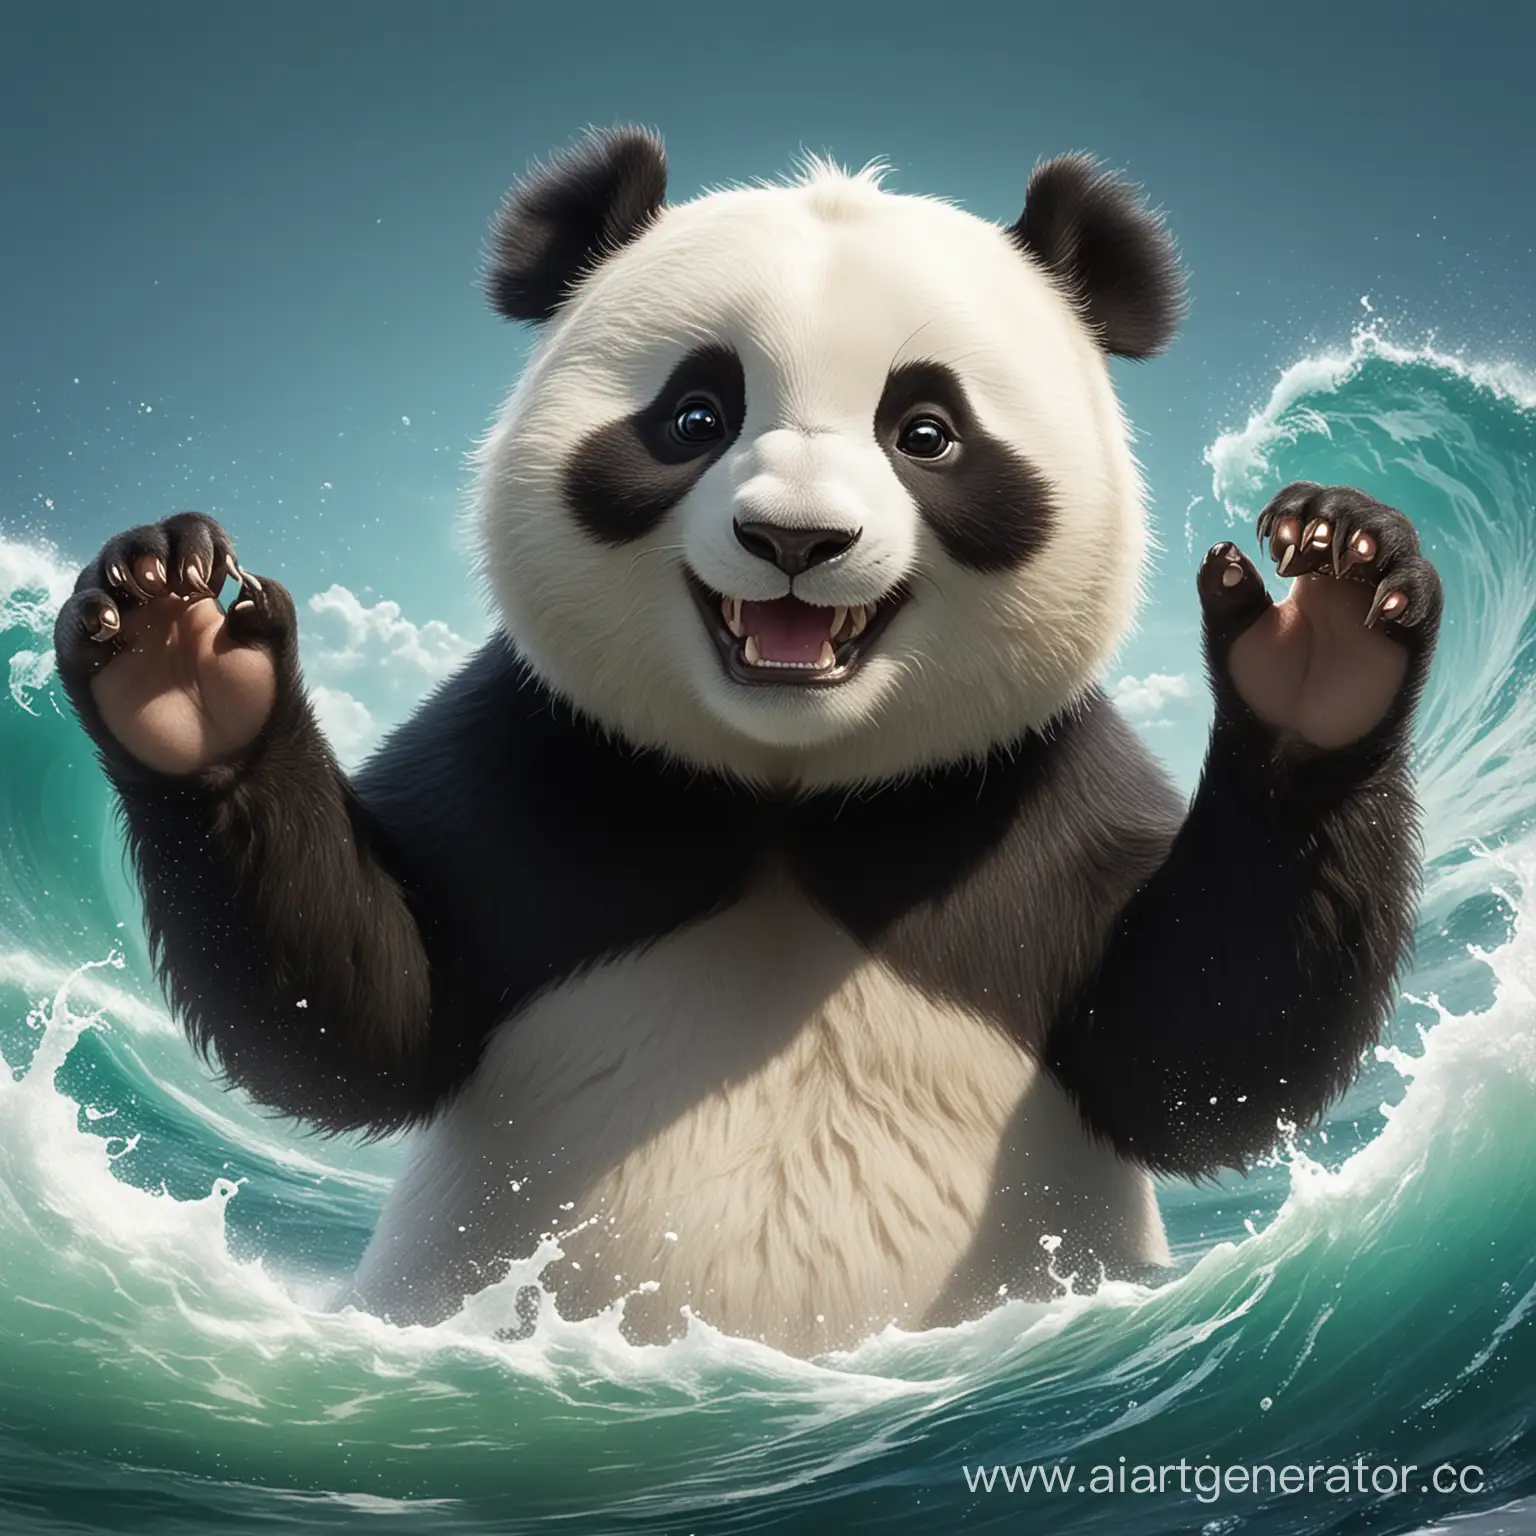 Joyful-Panda-Waving-with-Bright-Smiles